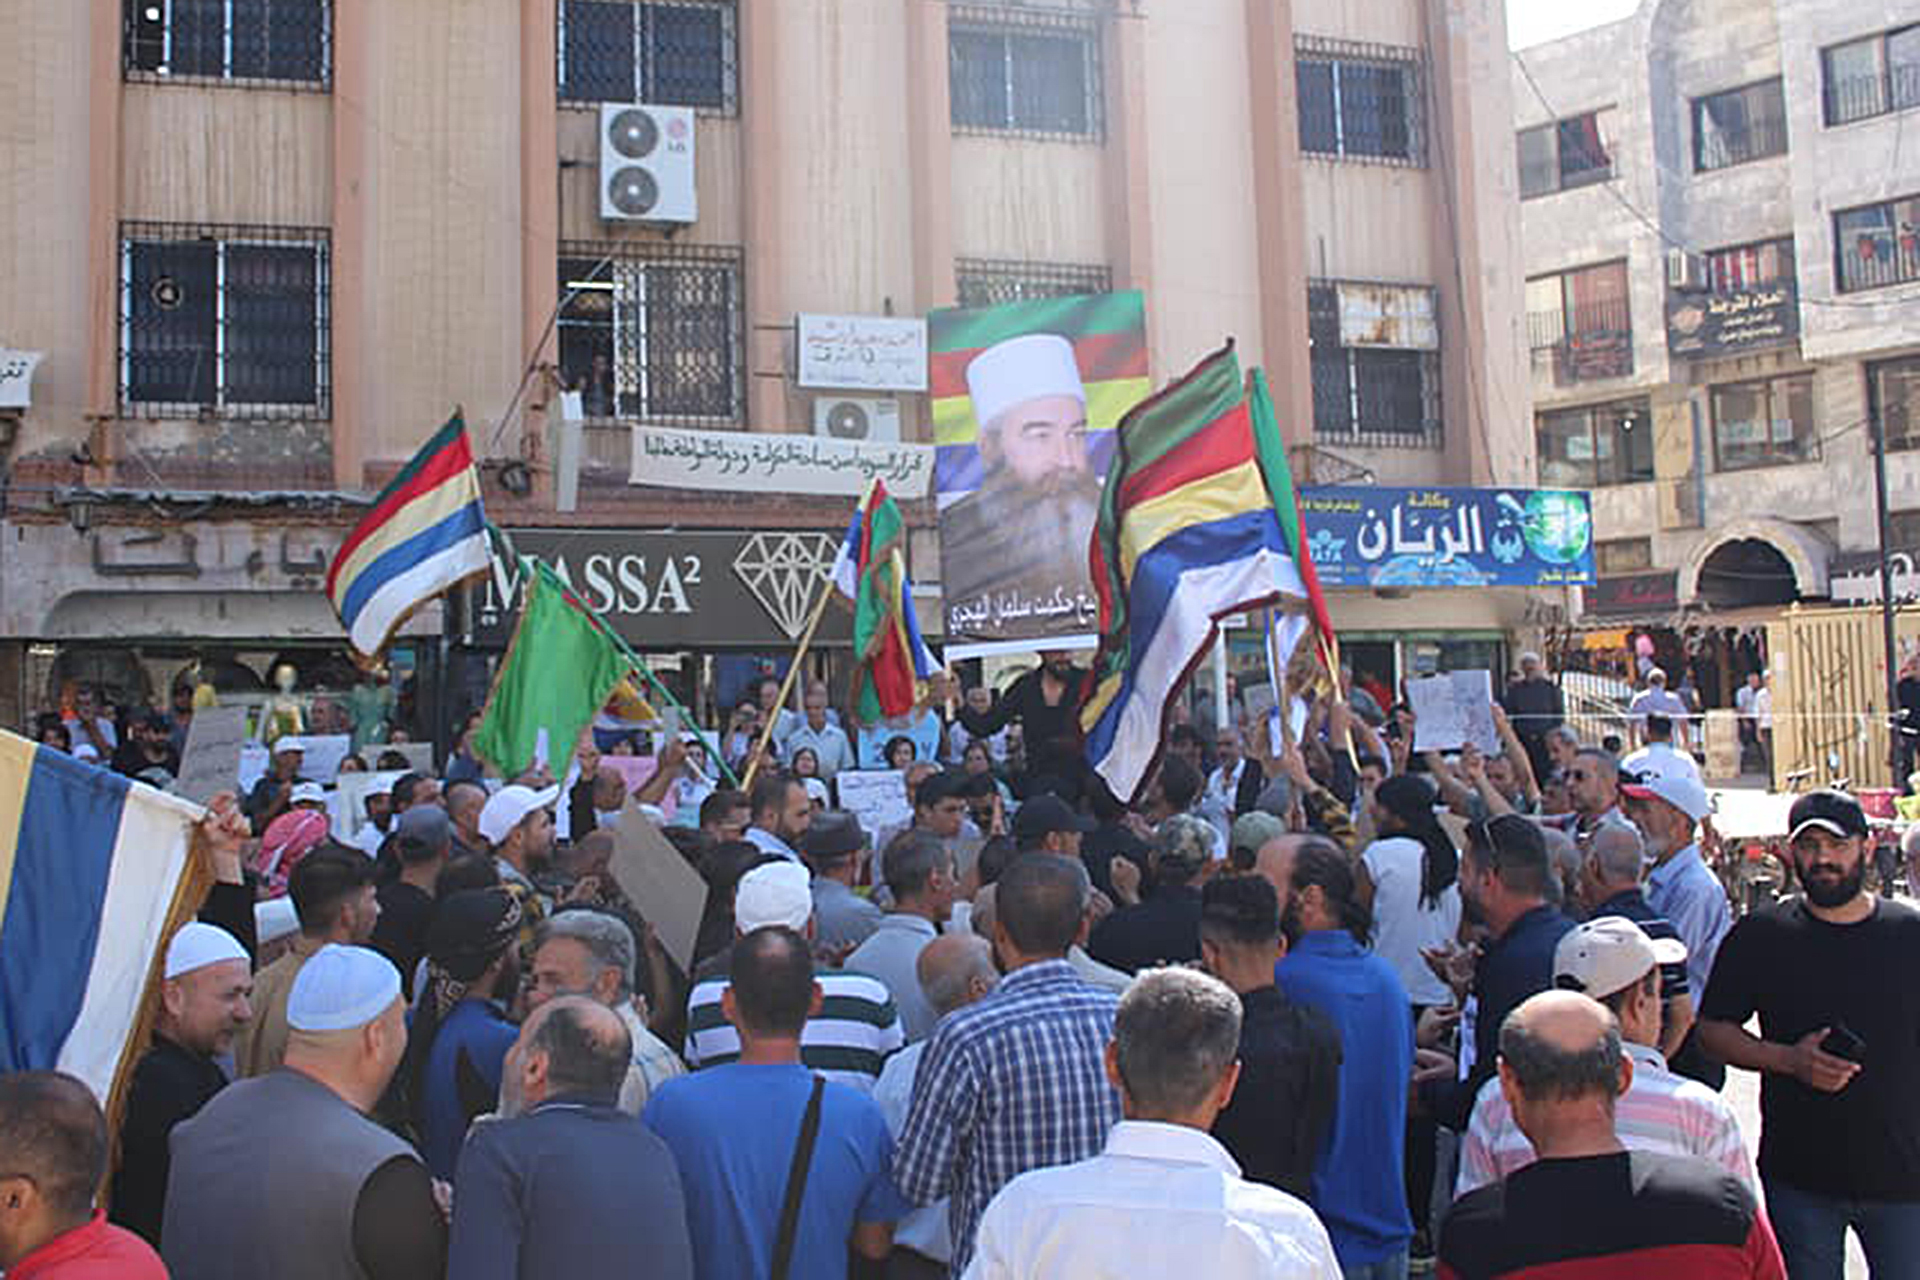 مظاهرات مسائية بالسويداء وإزالة صورة "للأسد الأب"